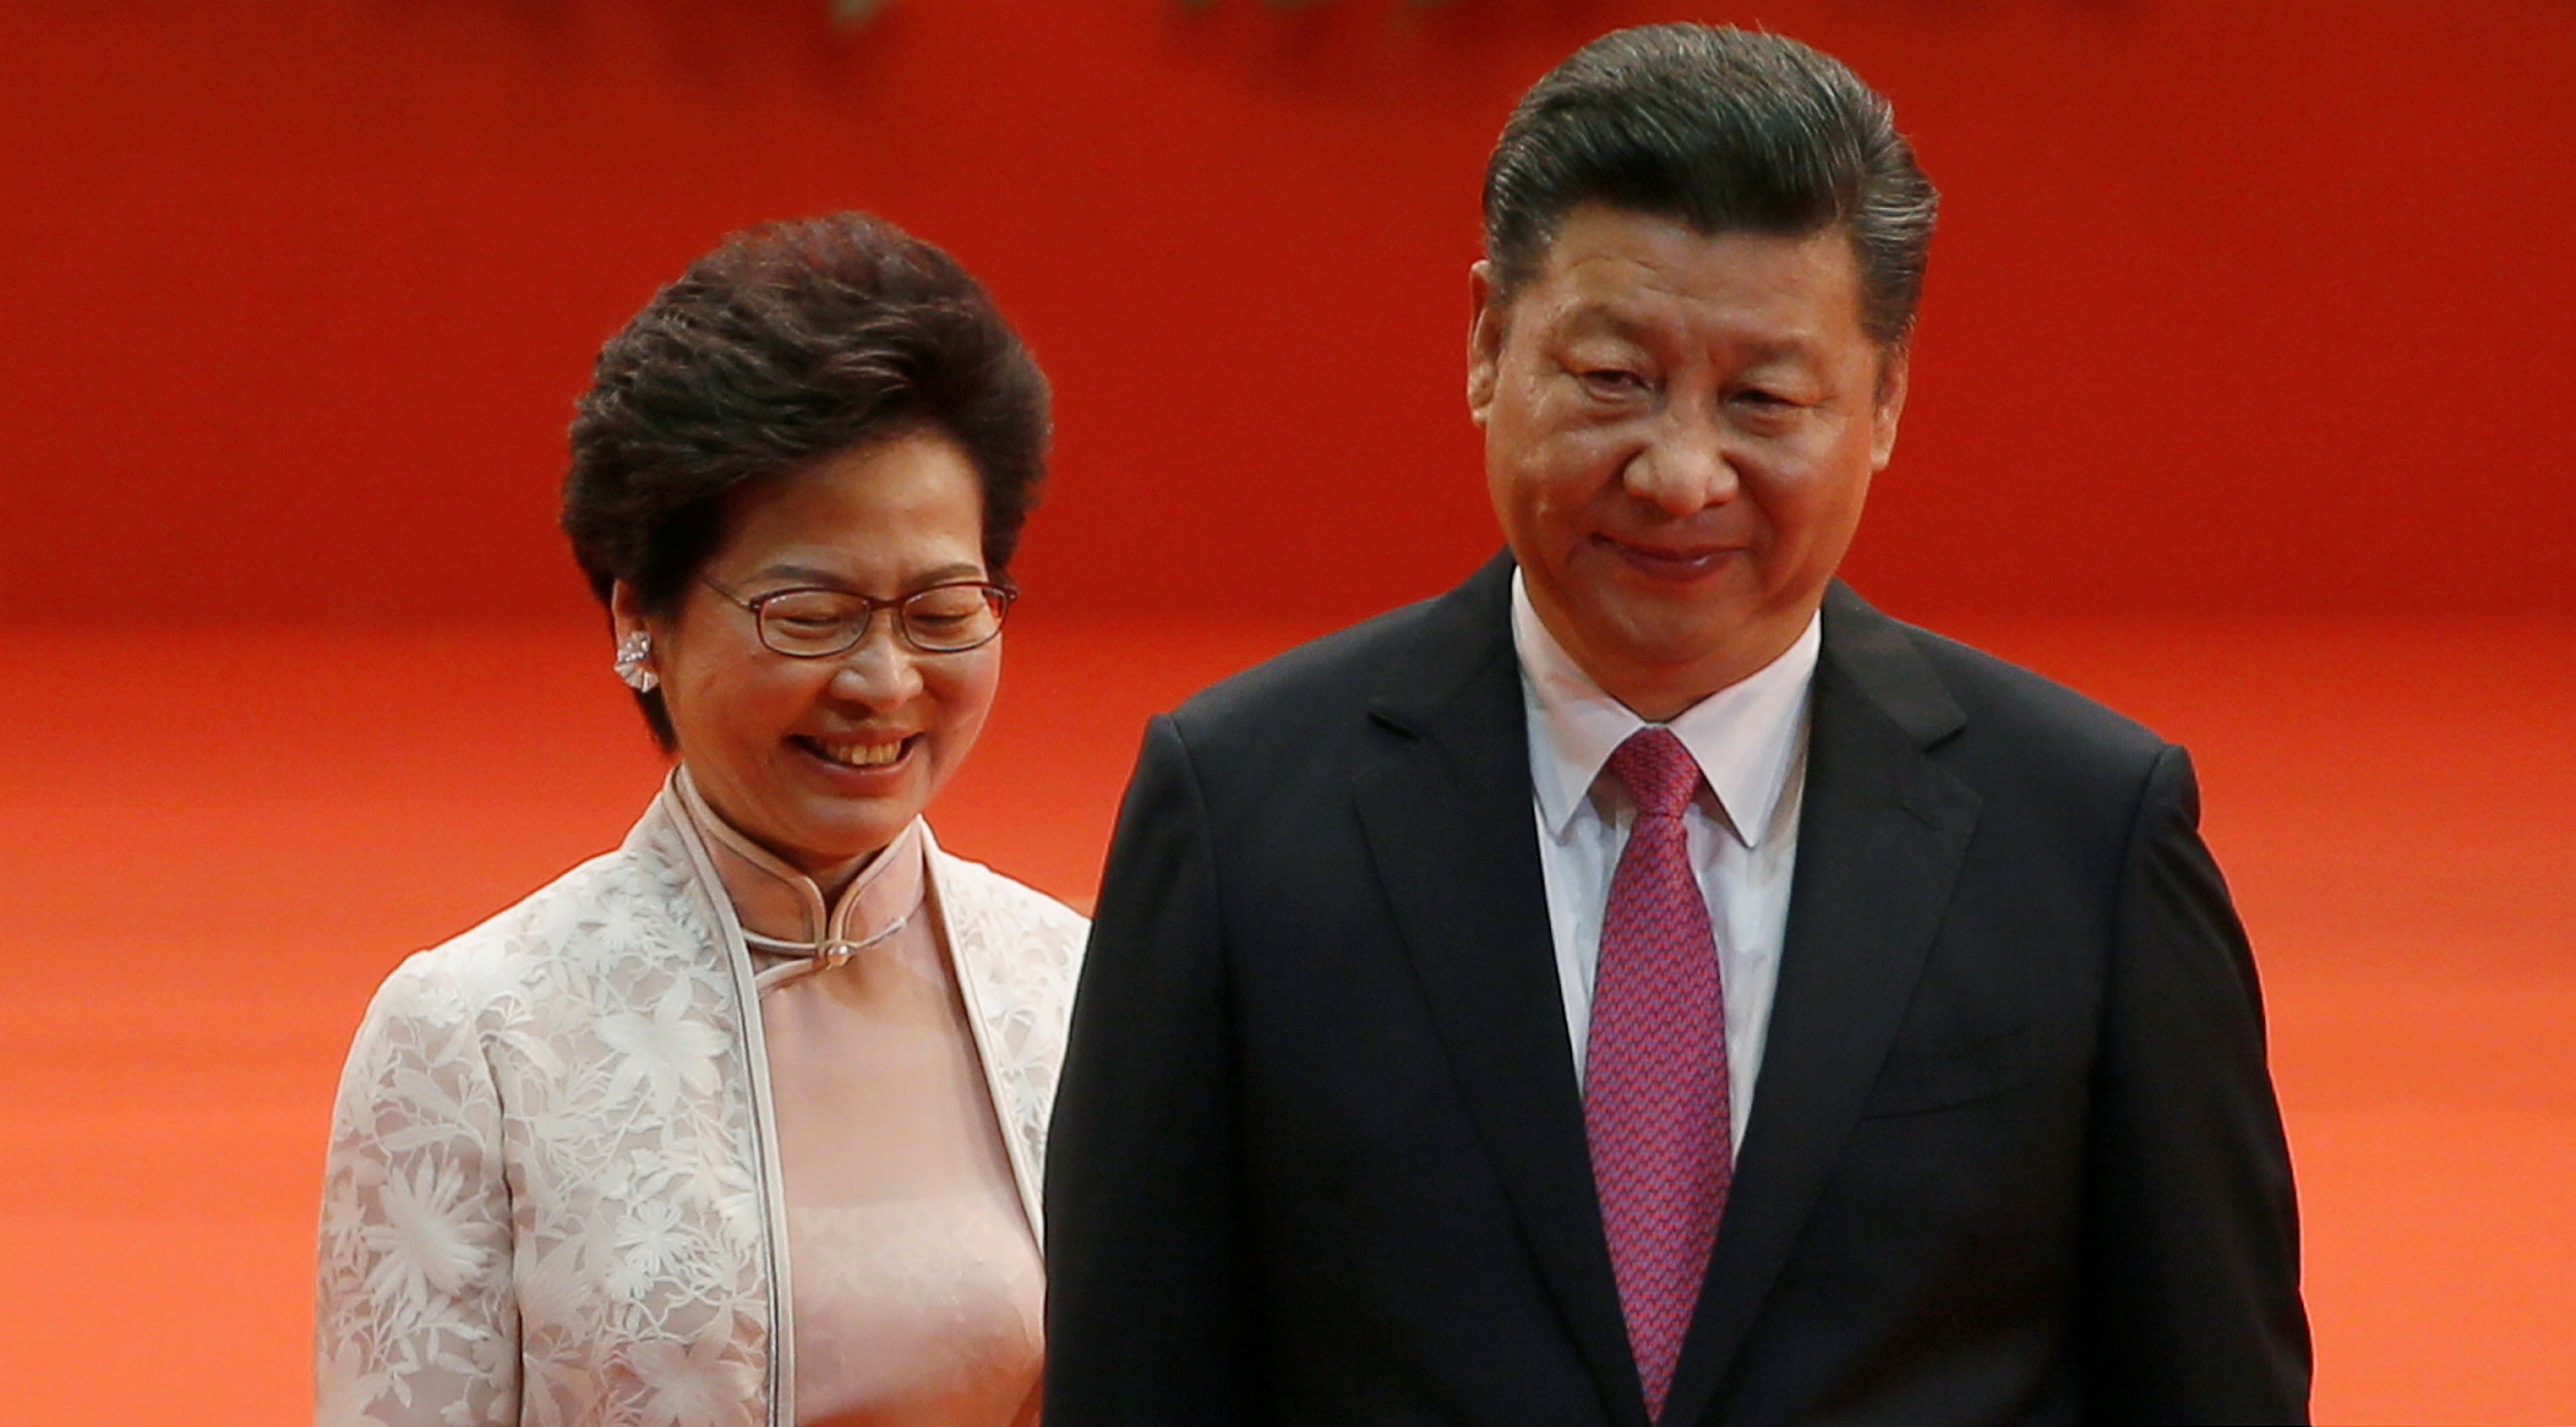 الرئيس الصينى شى جين بينغ بجوار الرئيس التنفيذى لهونج كونج كارى لام